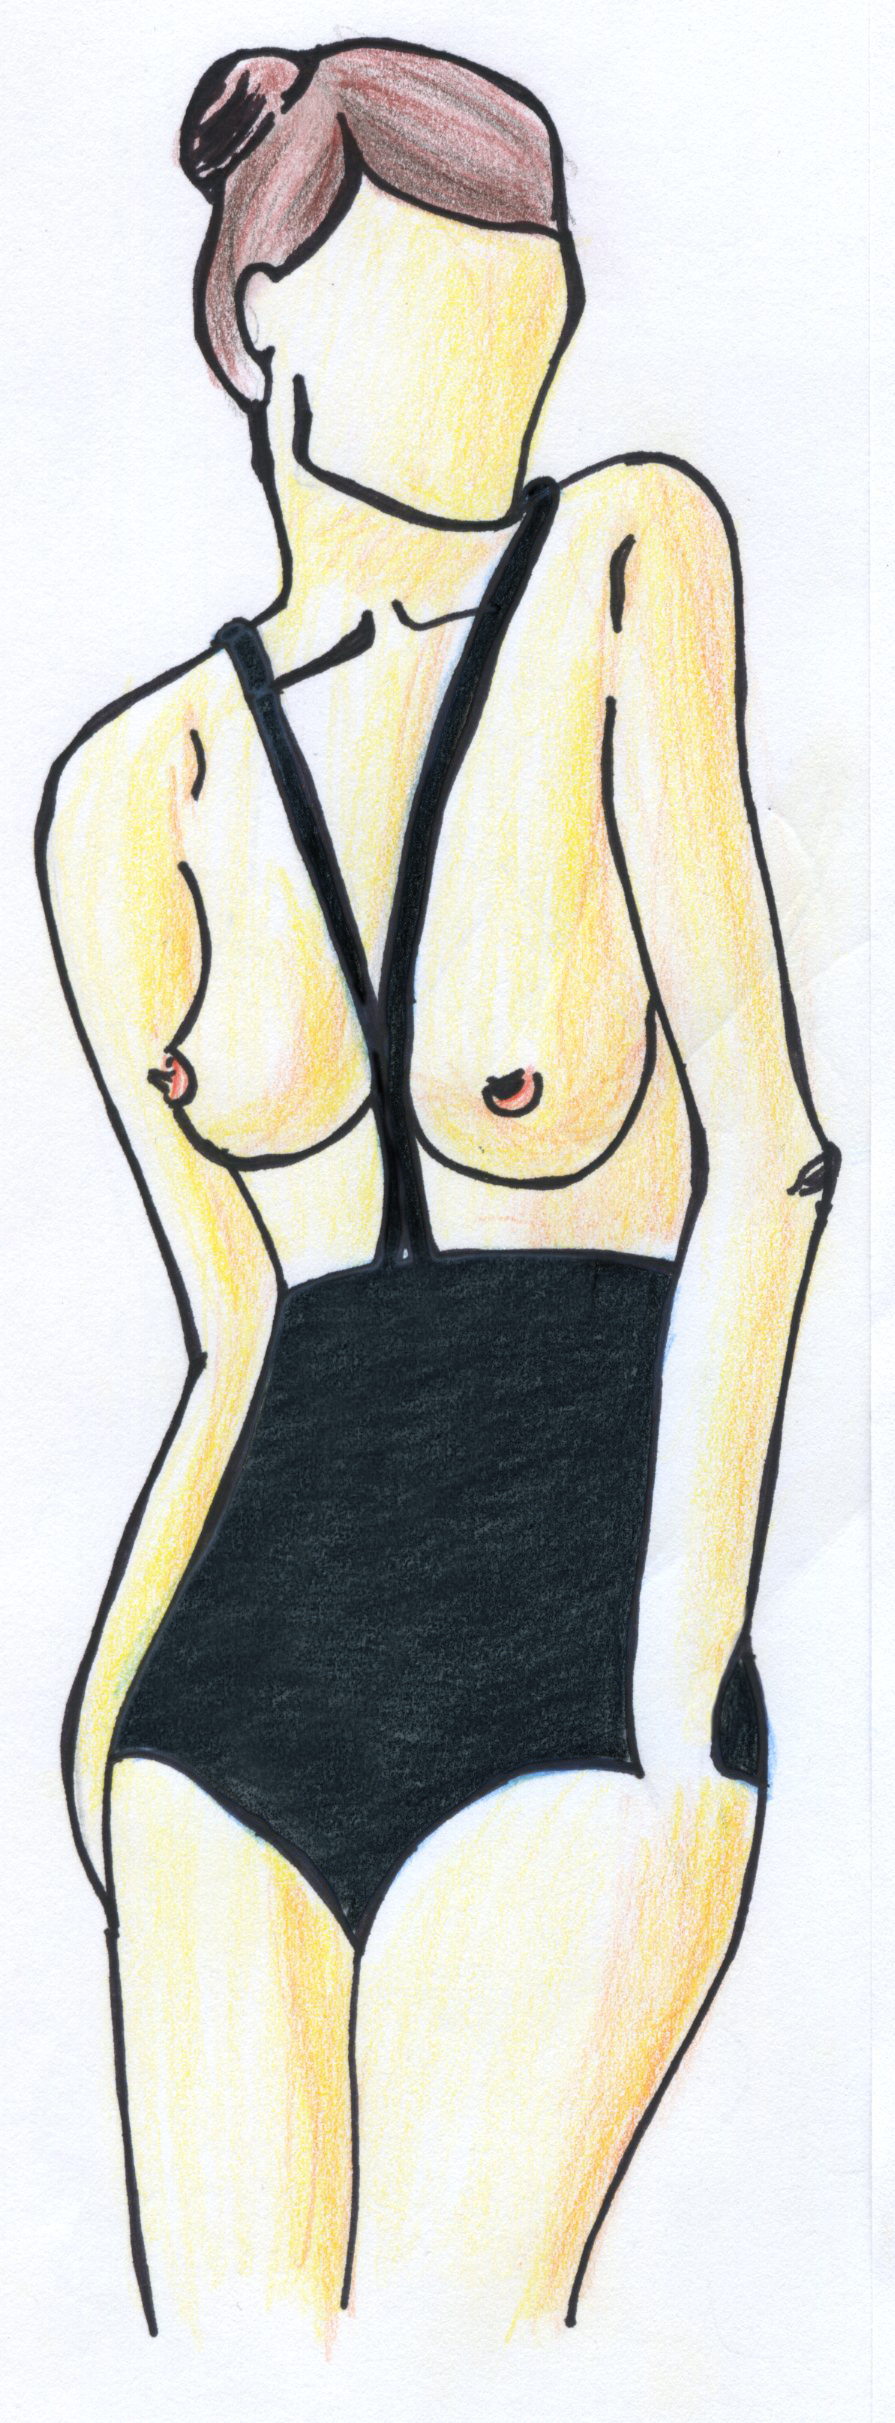 Das Bild ist eine Zeichnung. Auf der Zeichnung ist eine Frau. Die Frau hat einen Monokini an.